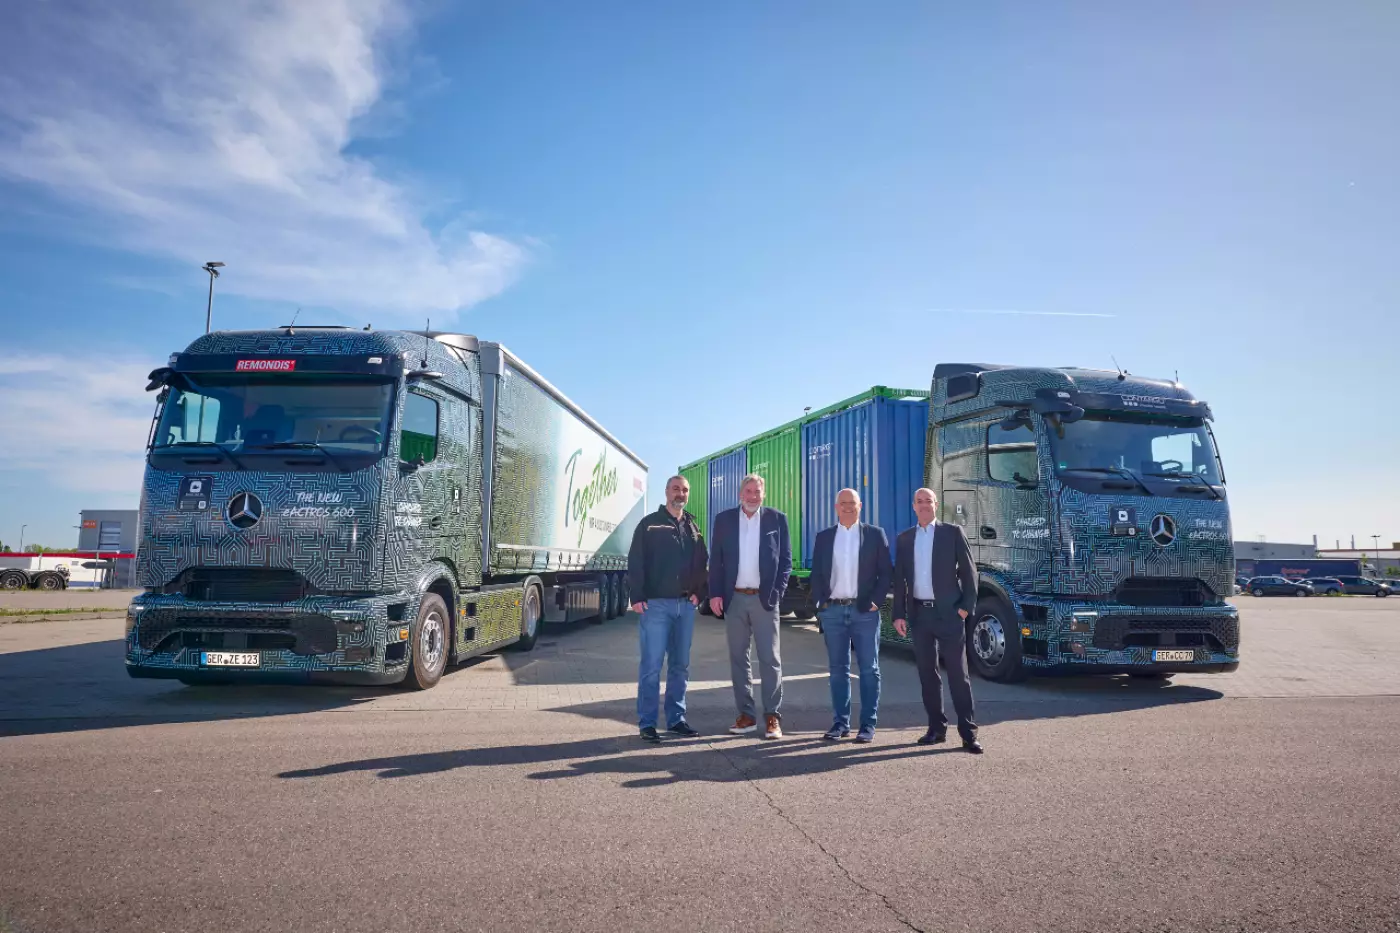 Von links: Steffen Maier, Mercedes-Benz Trucks; Sascha Hähnke, Geschäftsführer Remondis Sustainable Services GmbH; Manfred Klump, Mercedes-Benz Trucks; Michael Starke, Geschäftsführer Rhenus Trucking GmbH & Co. KG.
